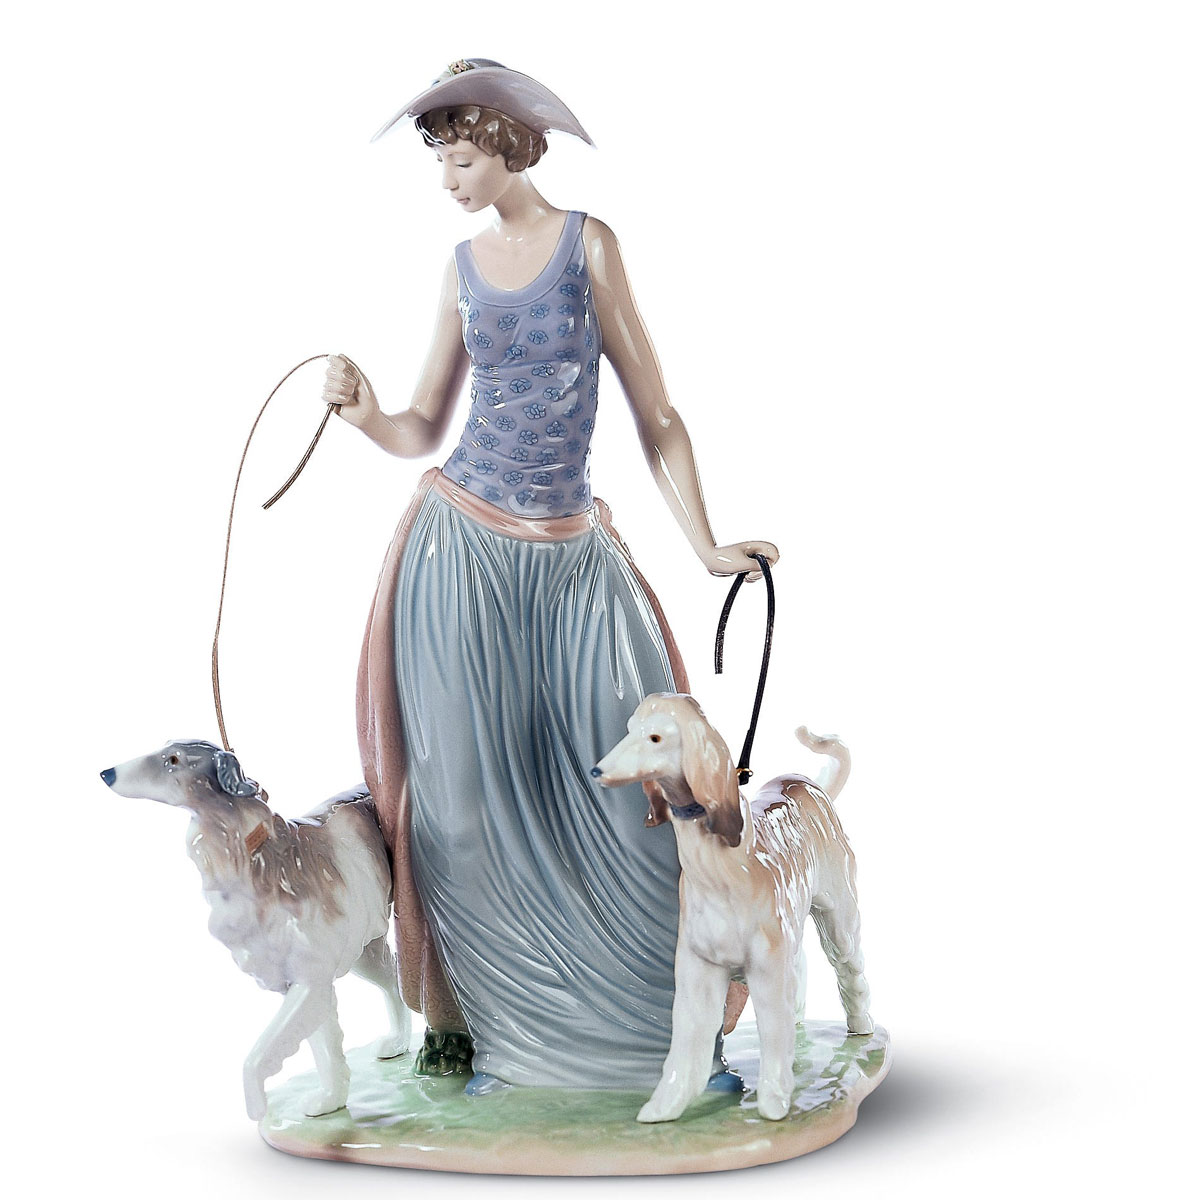 Lladro Classic Sculpture, Elegant Promenade Woman Figurine